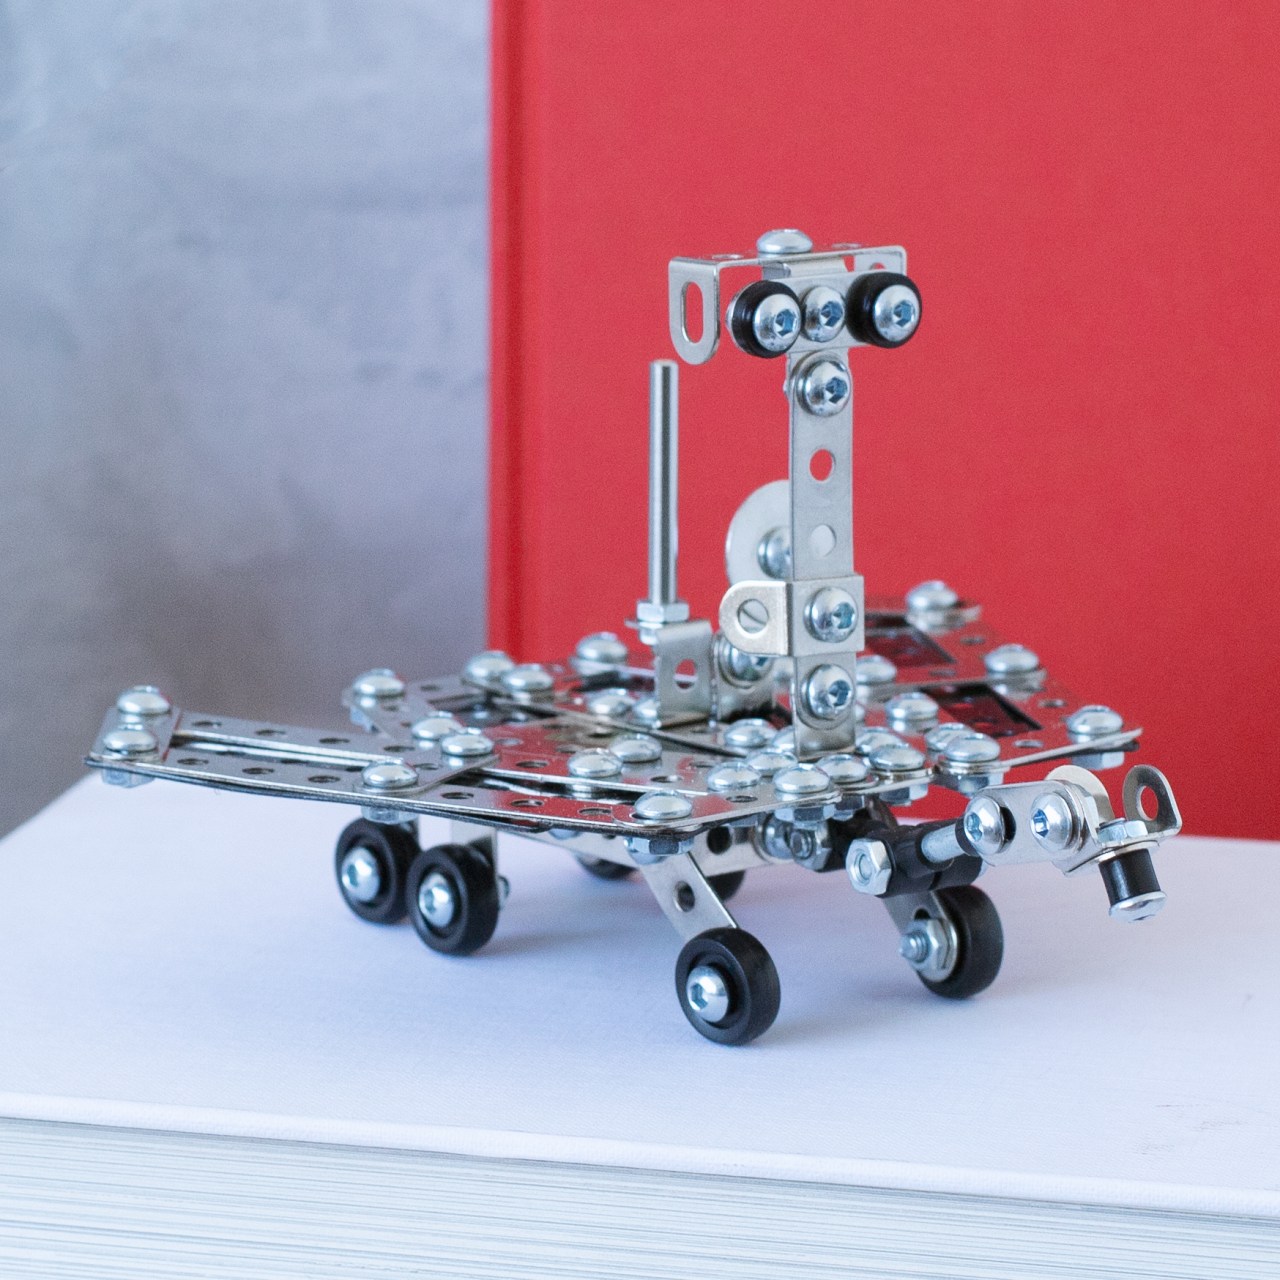 NASA Mars Rover Construction Kit